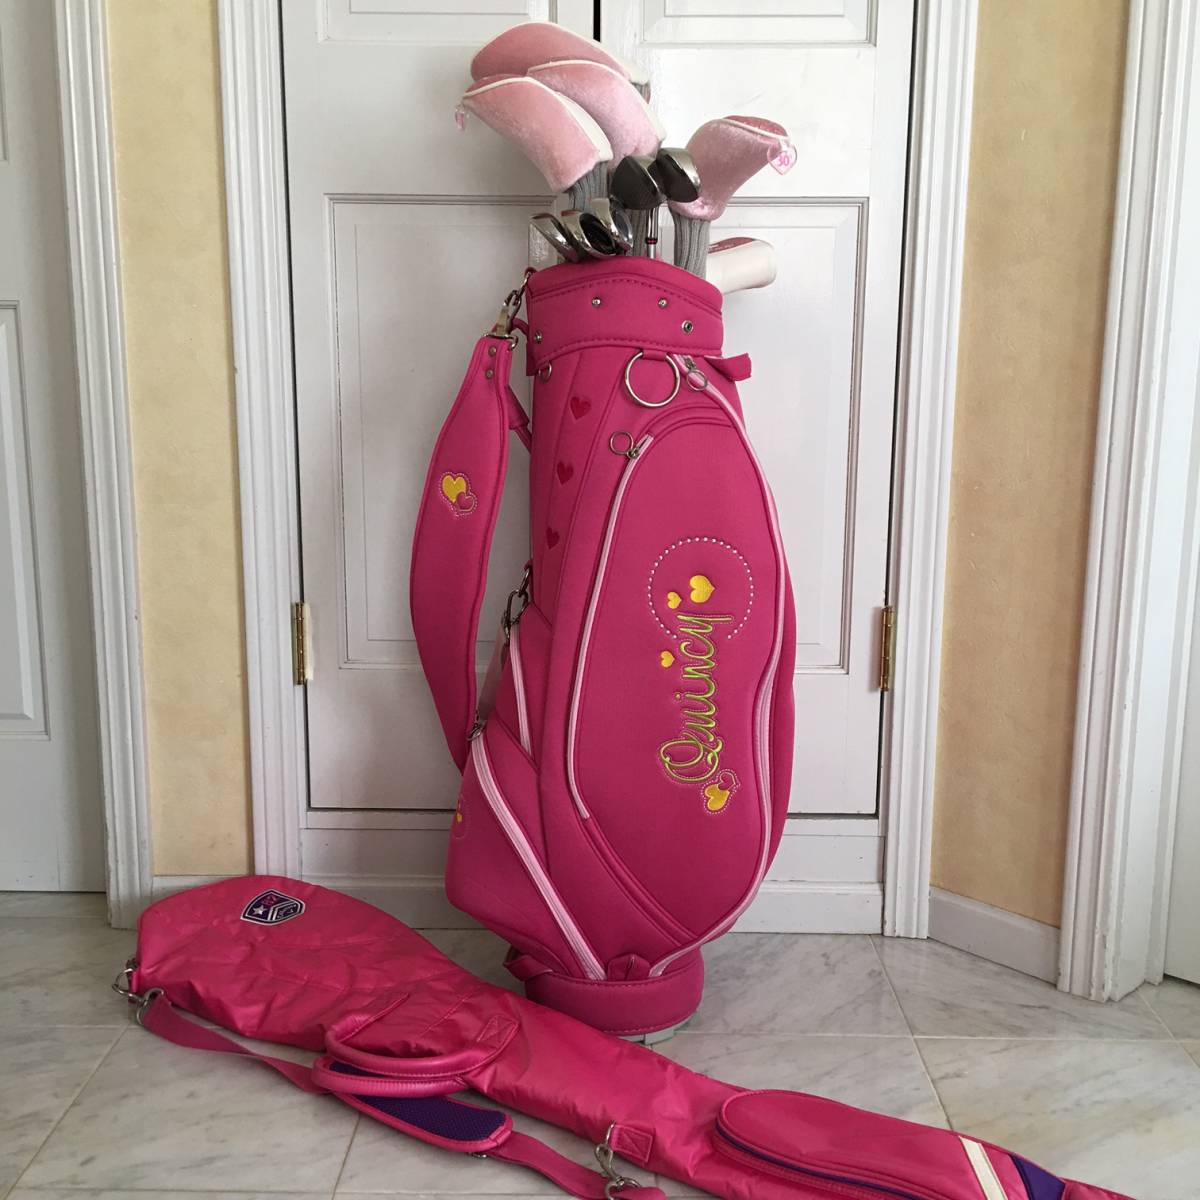 介紹〜中級卡拉威卡拉威女士俱樂部套裝10球童套裝粉紅色享受高爾夫設置高爾夫 原文:入門～中級者向け Callaway キャロウェイ レディース クラブセット 10本 キャディーバッグセット ピンク ENJOY SETTING ゴルフ